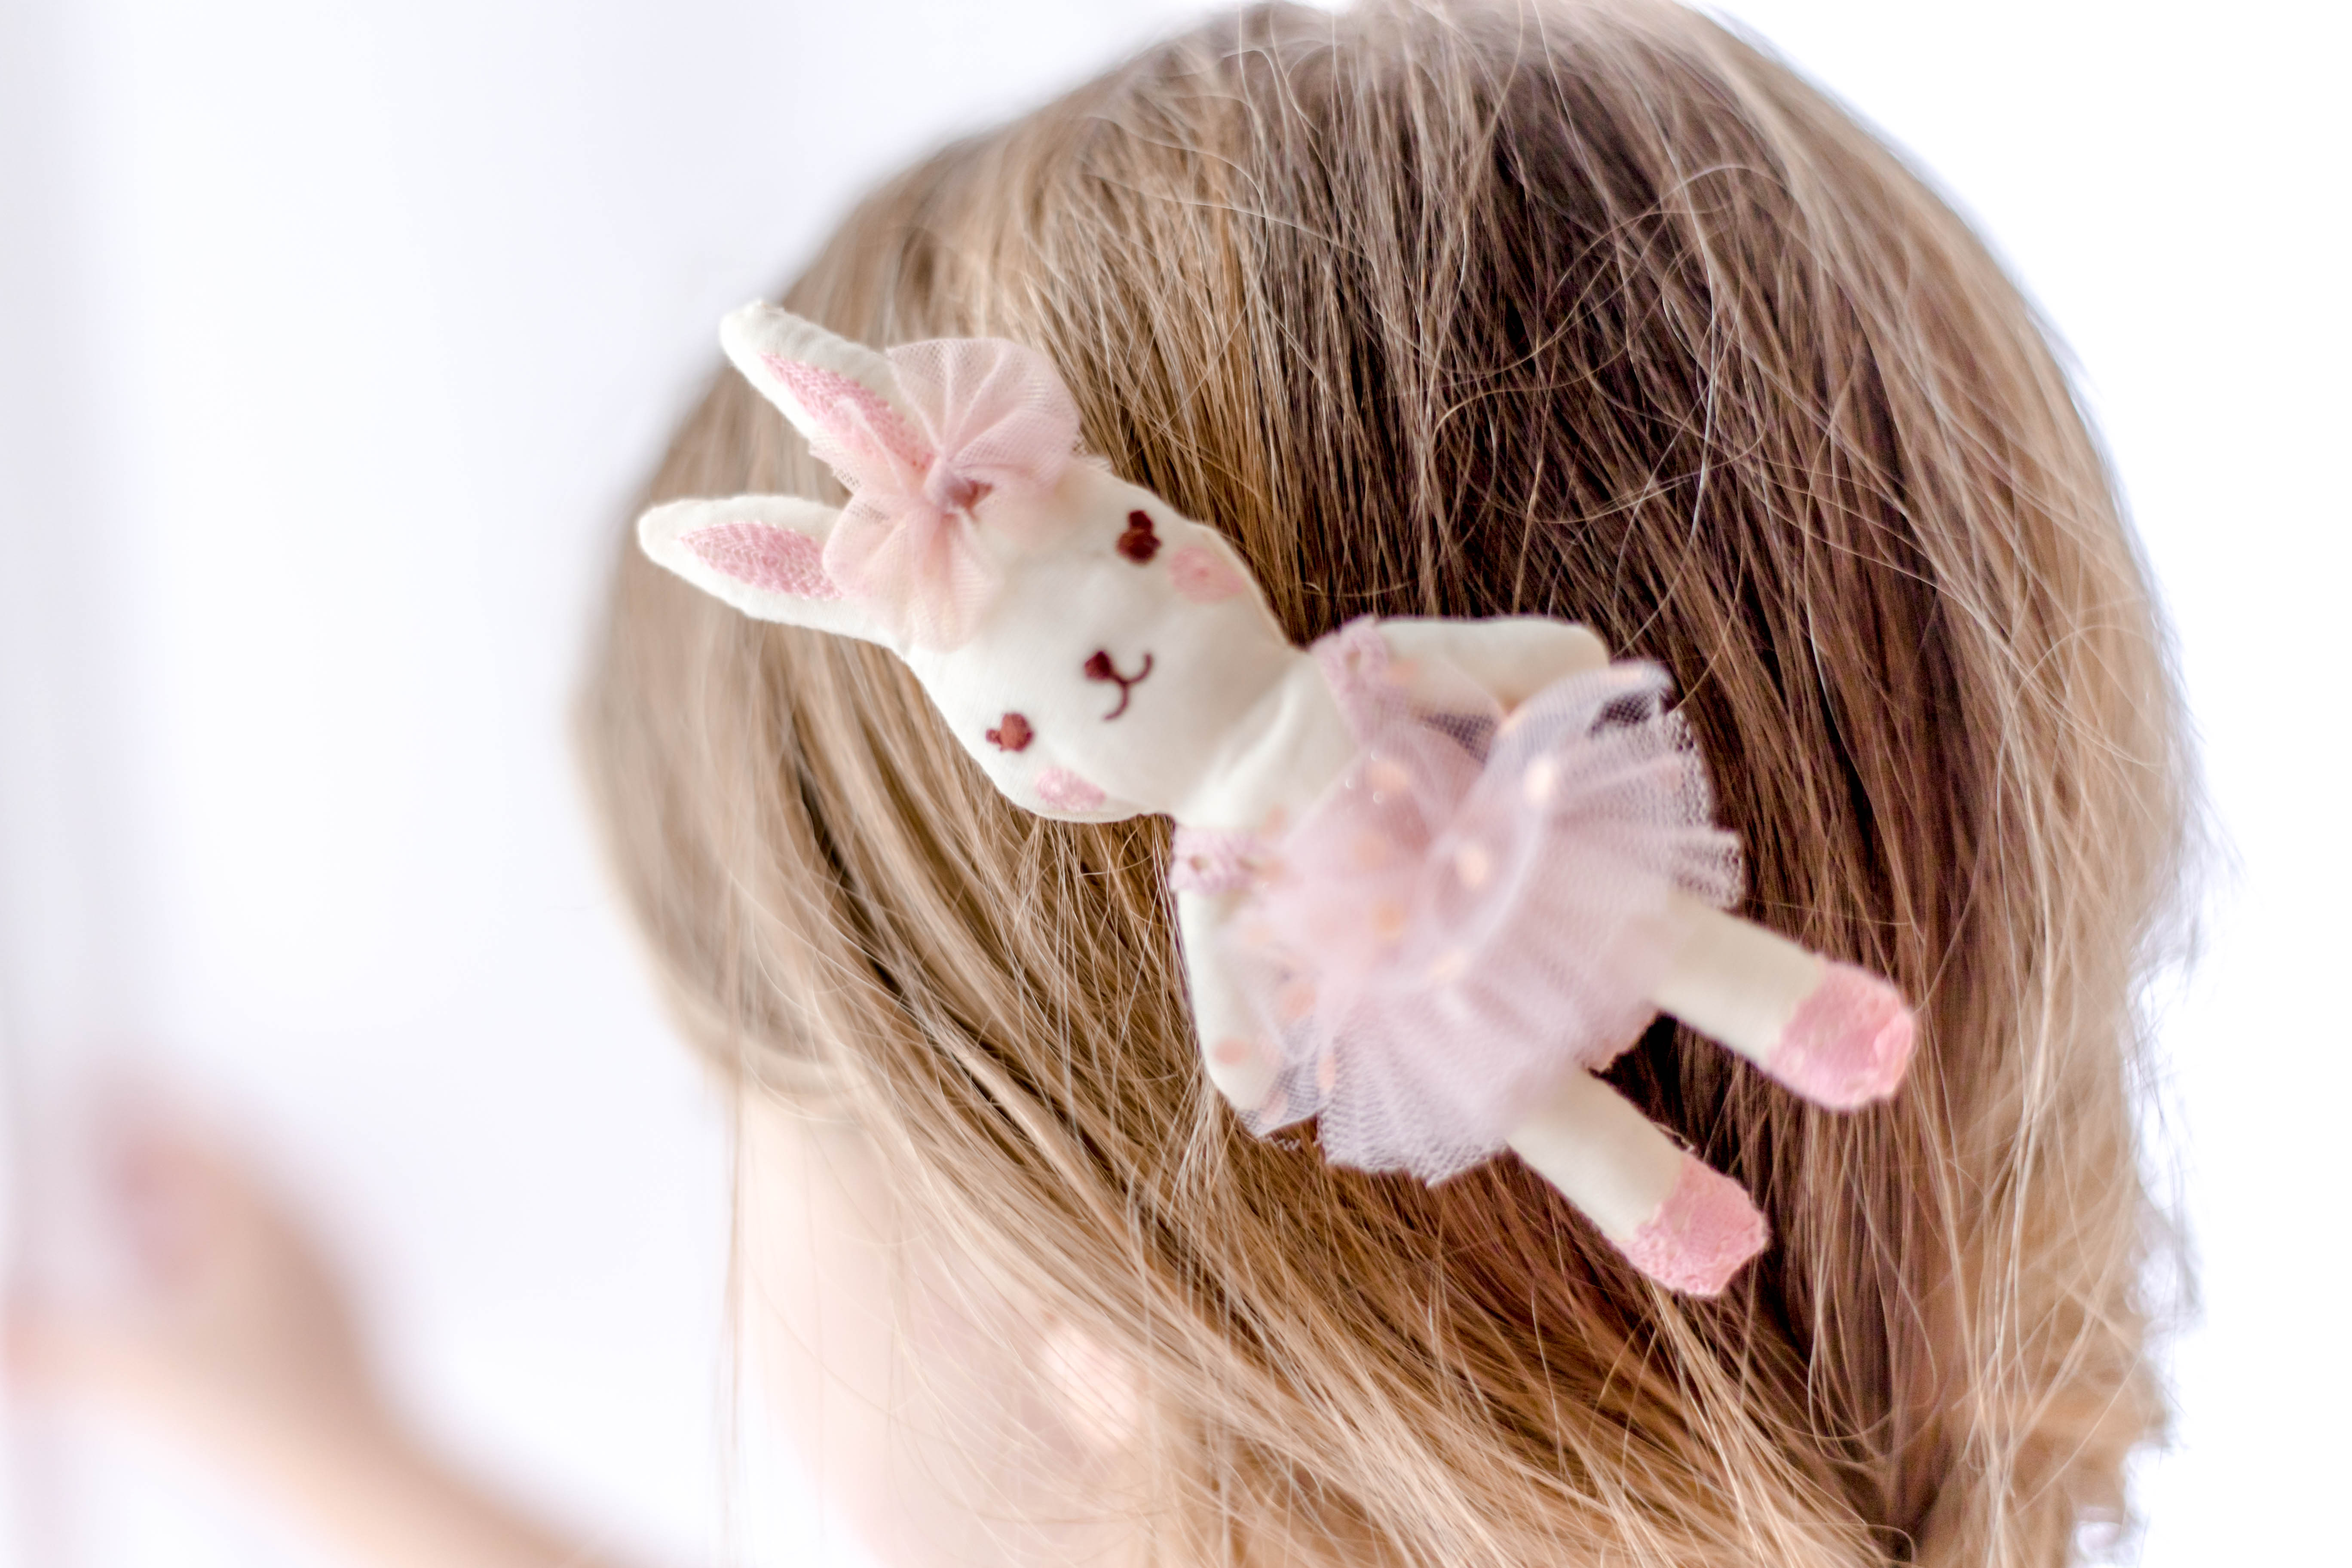 Hair Clip - Ballerina Bunny